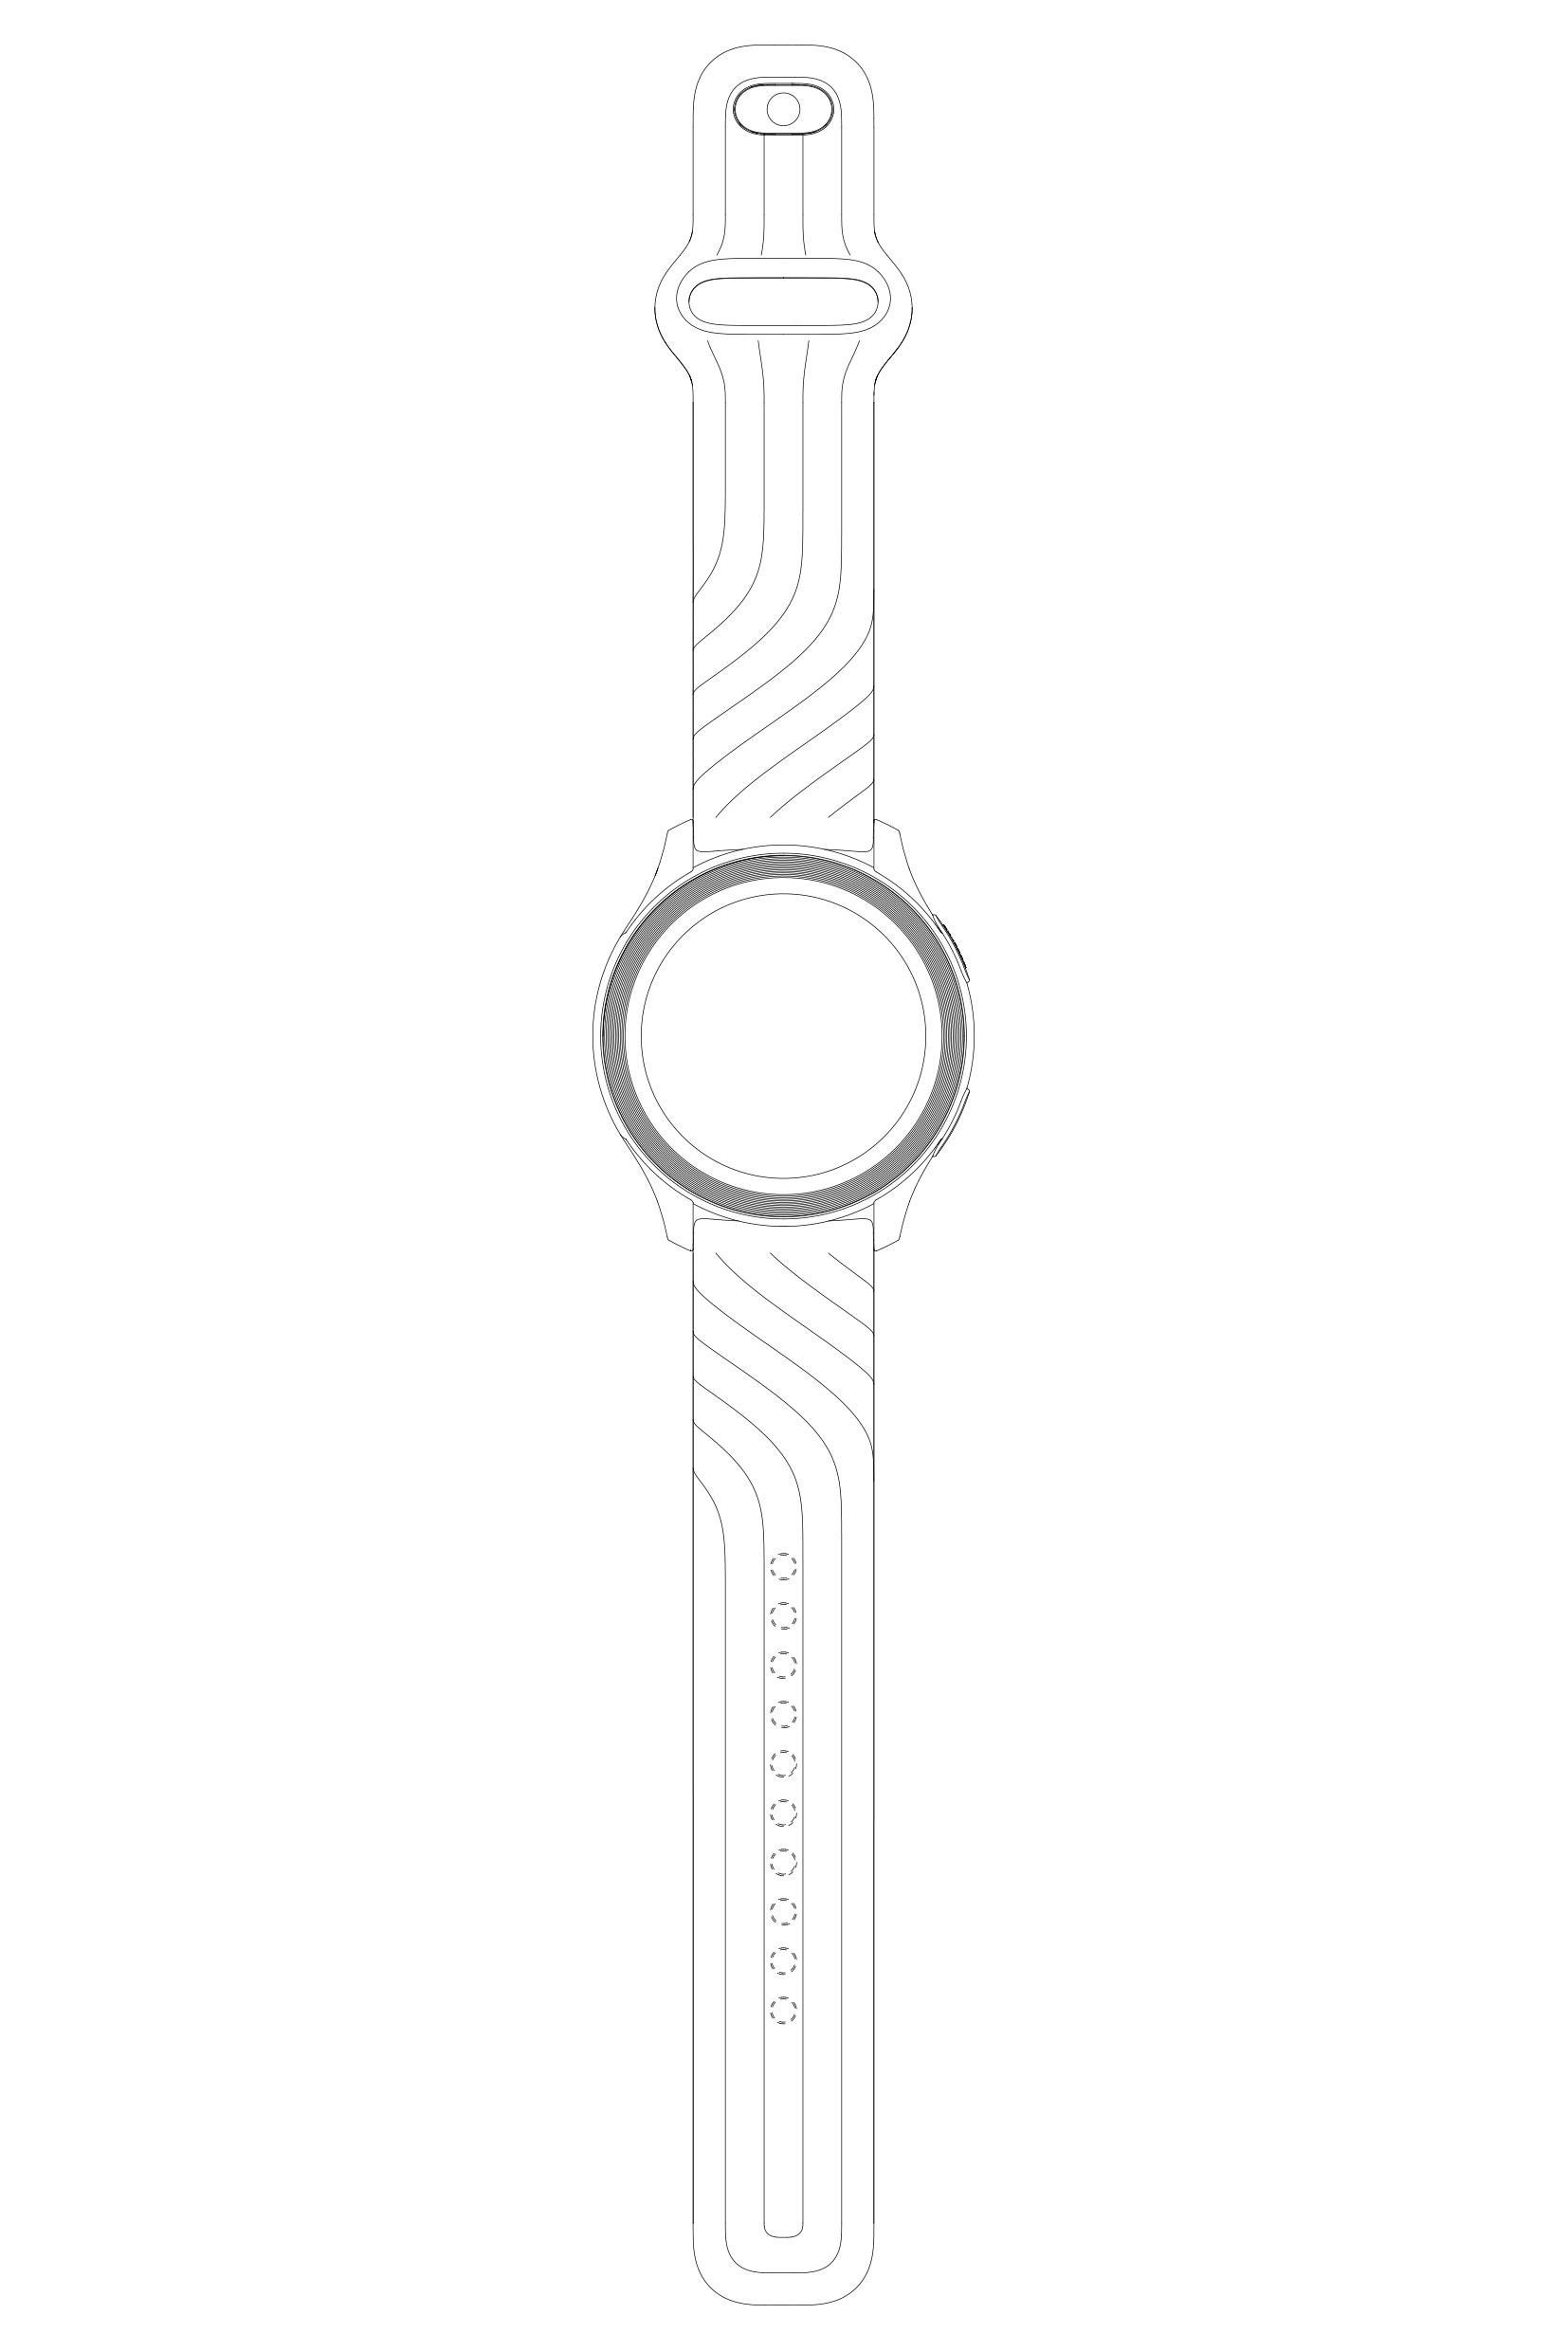 หลุดดีไซน์ OnePlus Watch มากับหน้าปัดกลม คาดเปิดตัวเดือนหน้า